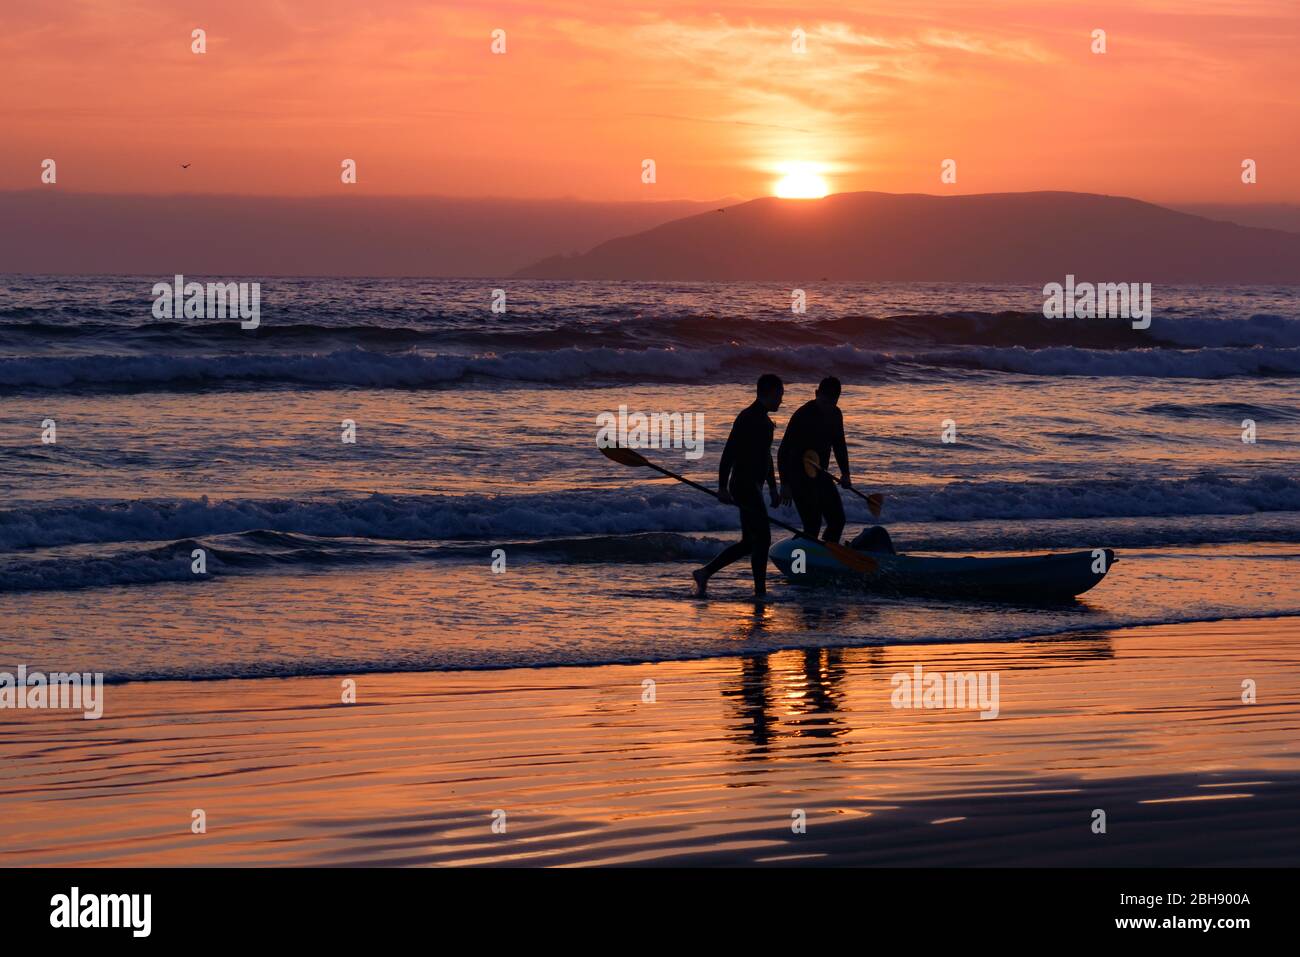 Silhouette von 2 Paddlern mit Boot am Strand bei Sonnenuntergang, im Hintergrund die Silhouette von Hügeln, die die Bucht um Pismo Beach umranden Stock Photo